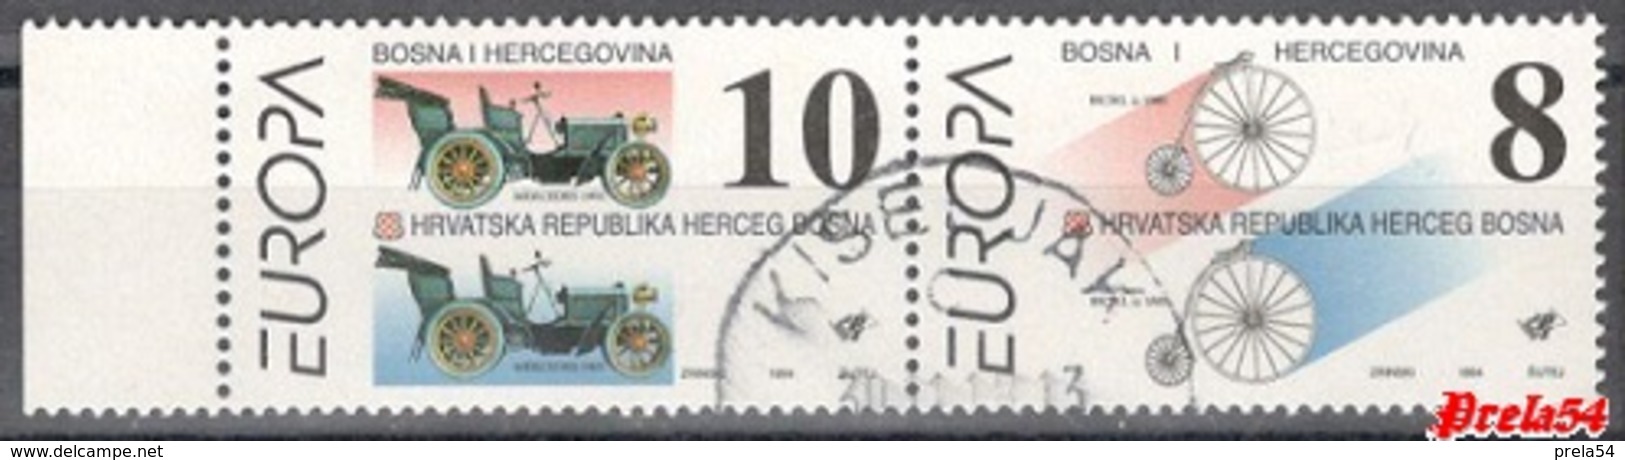 Bosnia Croatian Post -  EUROPA 1994 Used Pair - Bosnia Herzegovina